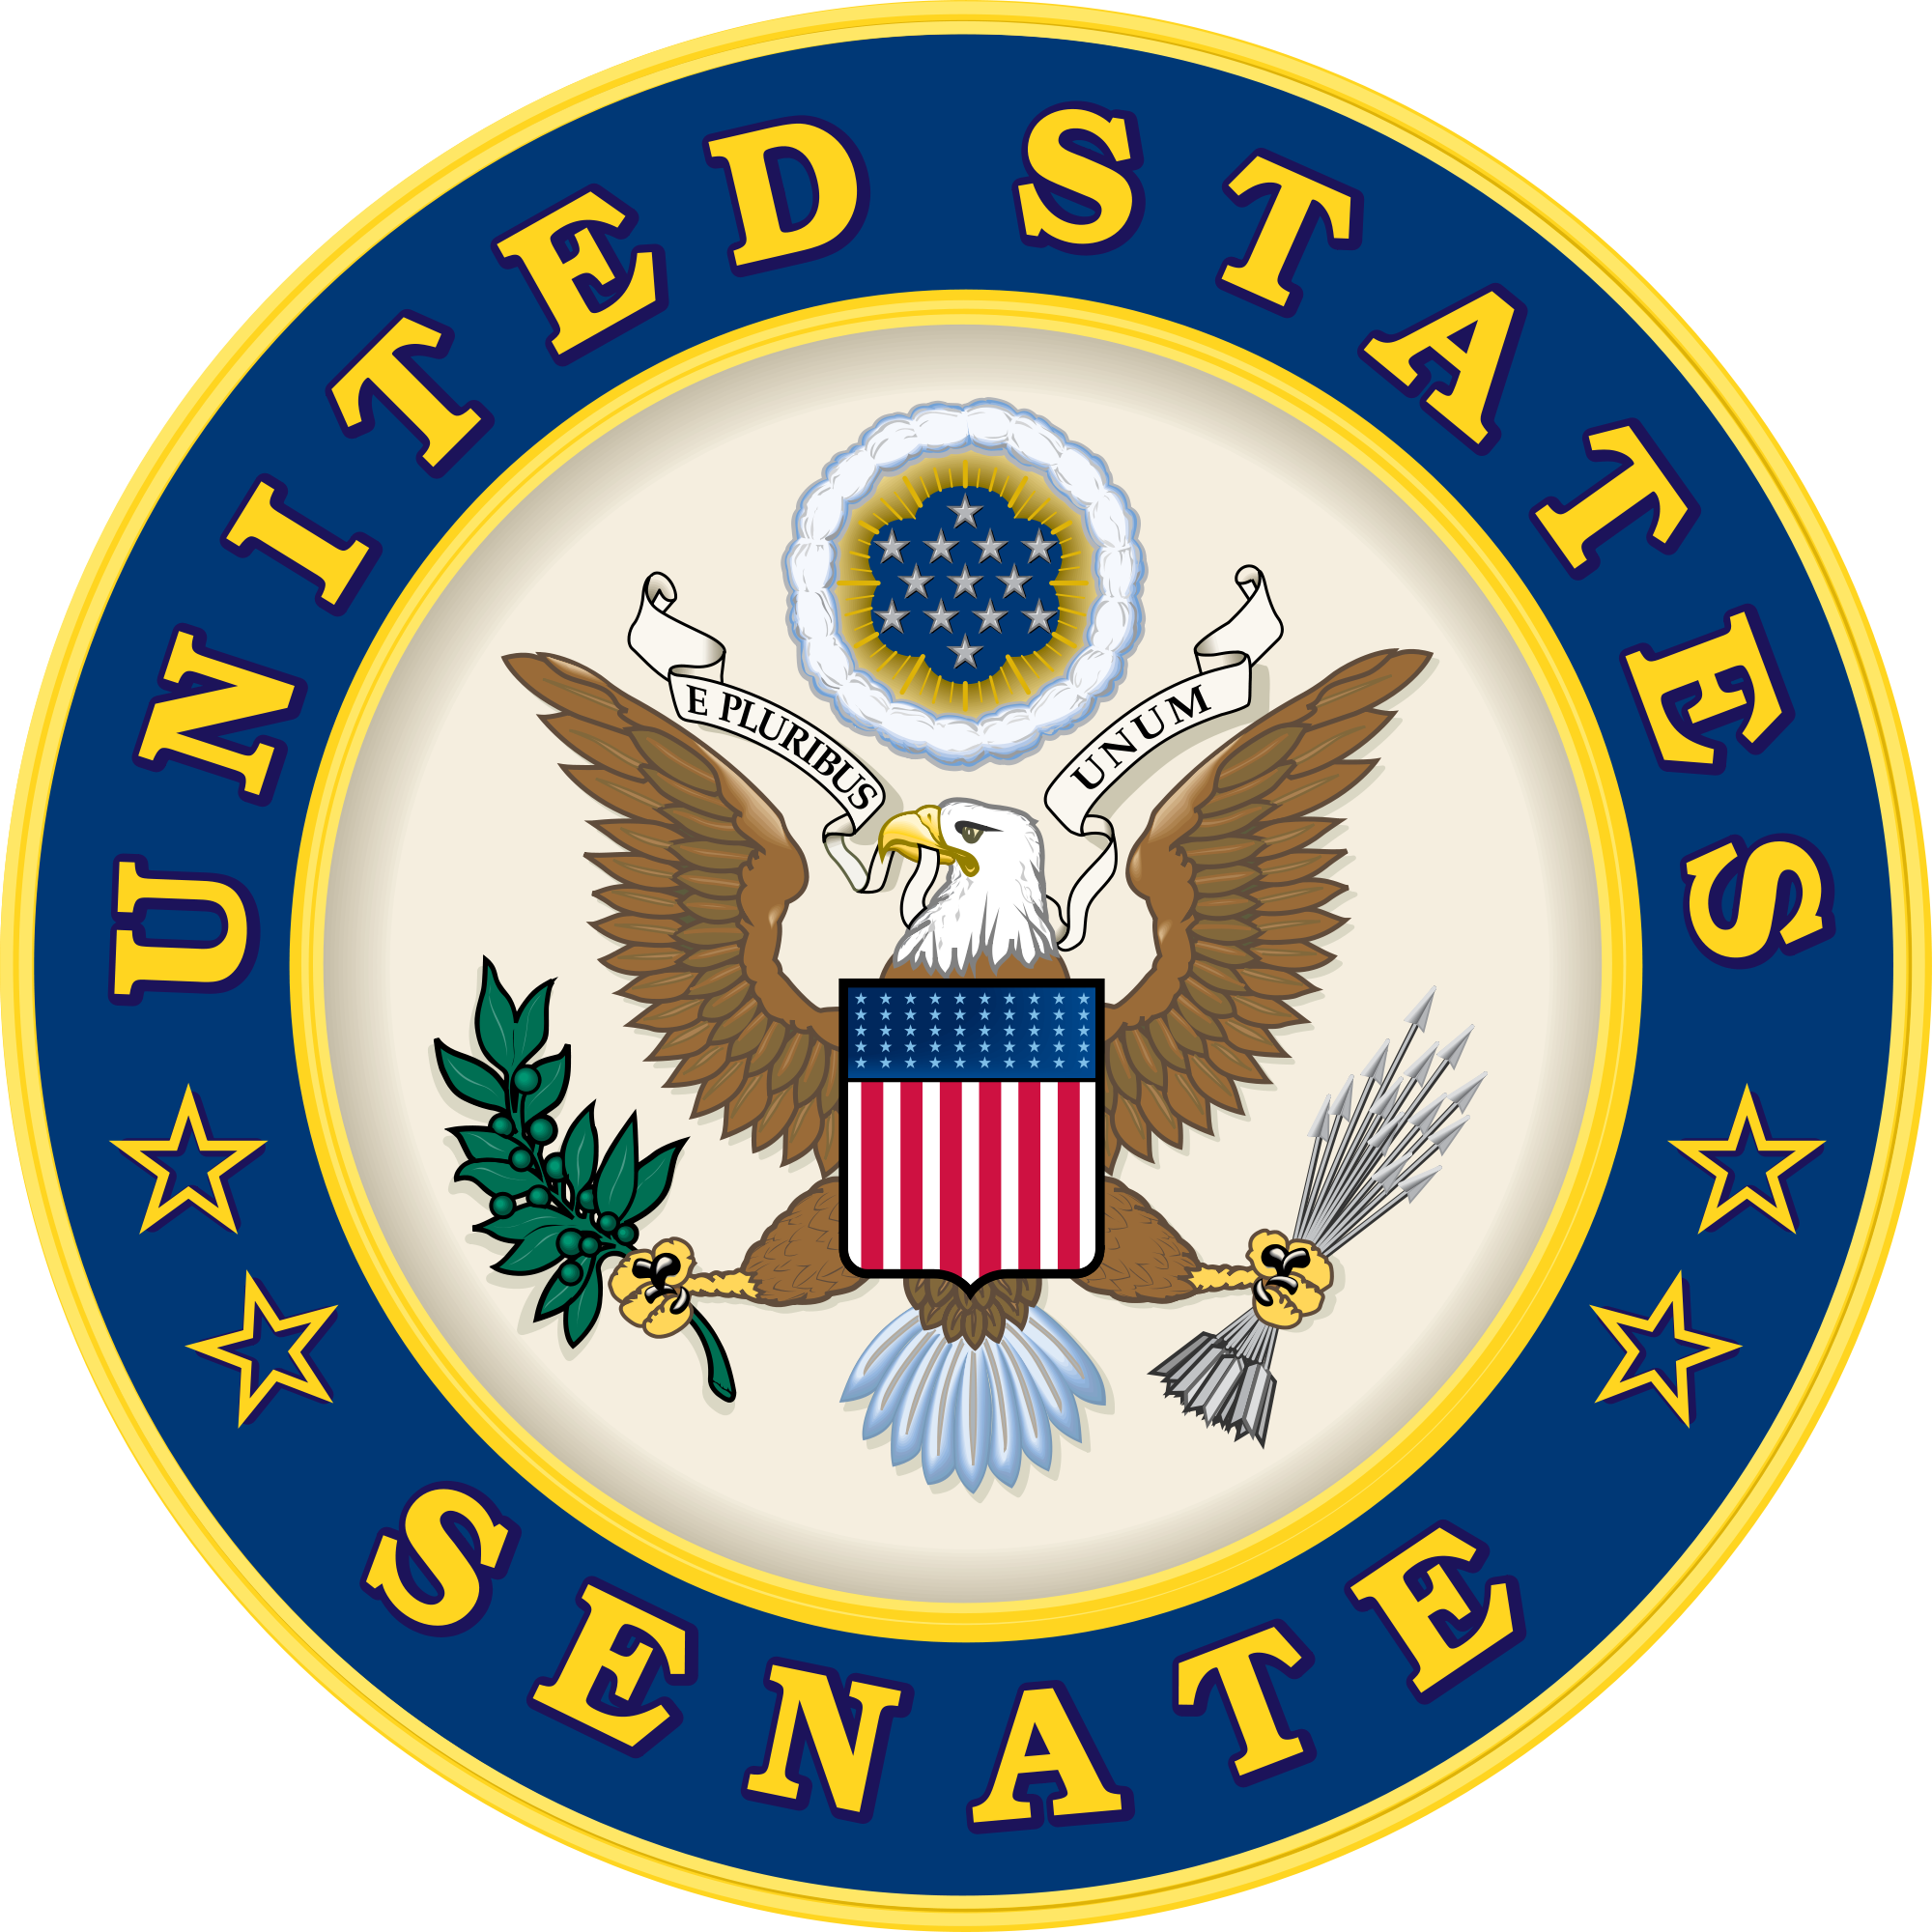 United States Senate discusses infrastructure